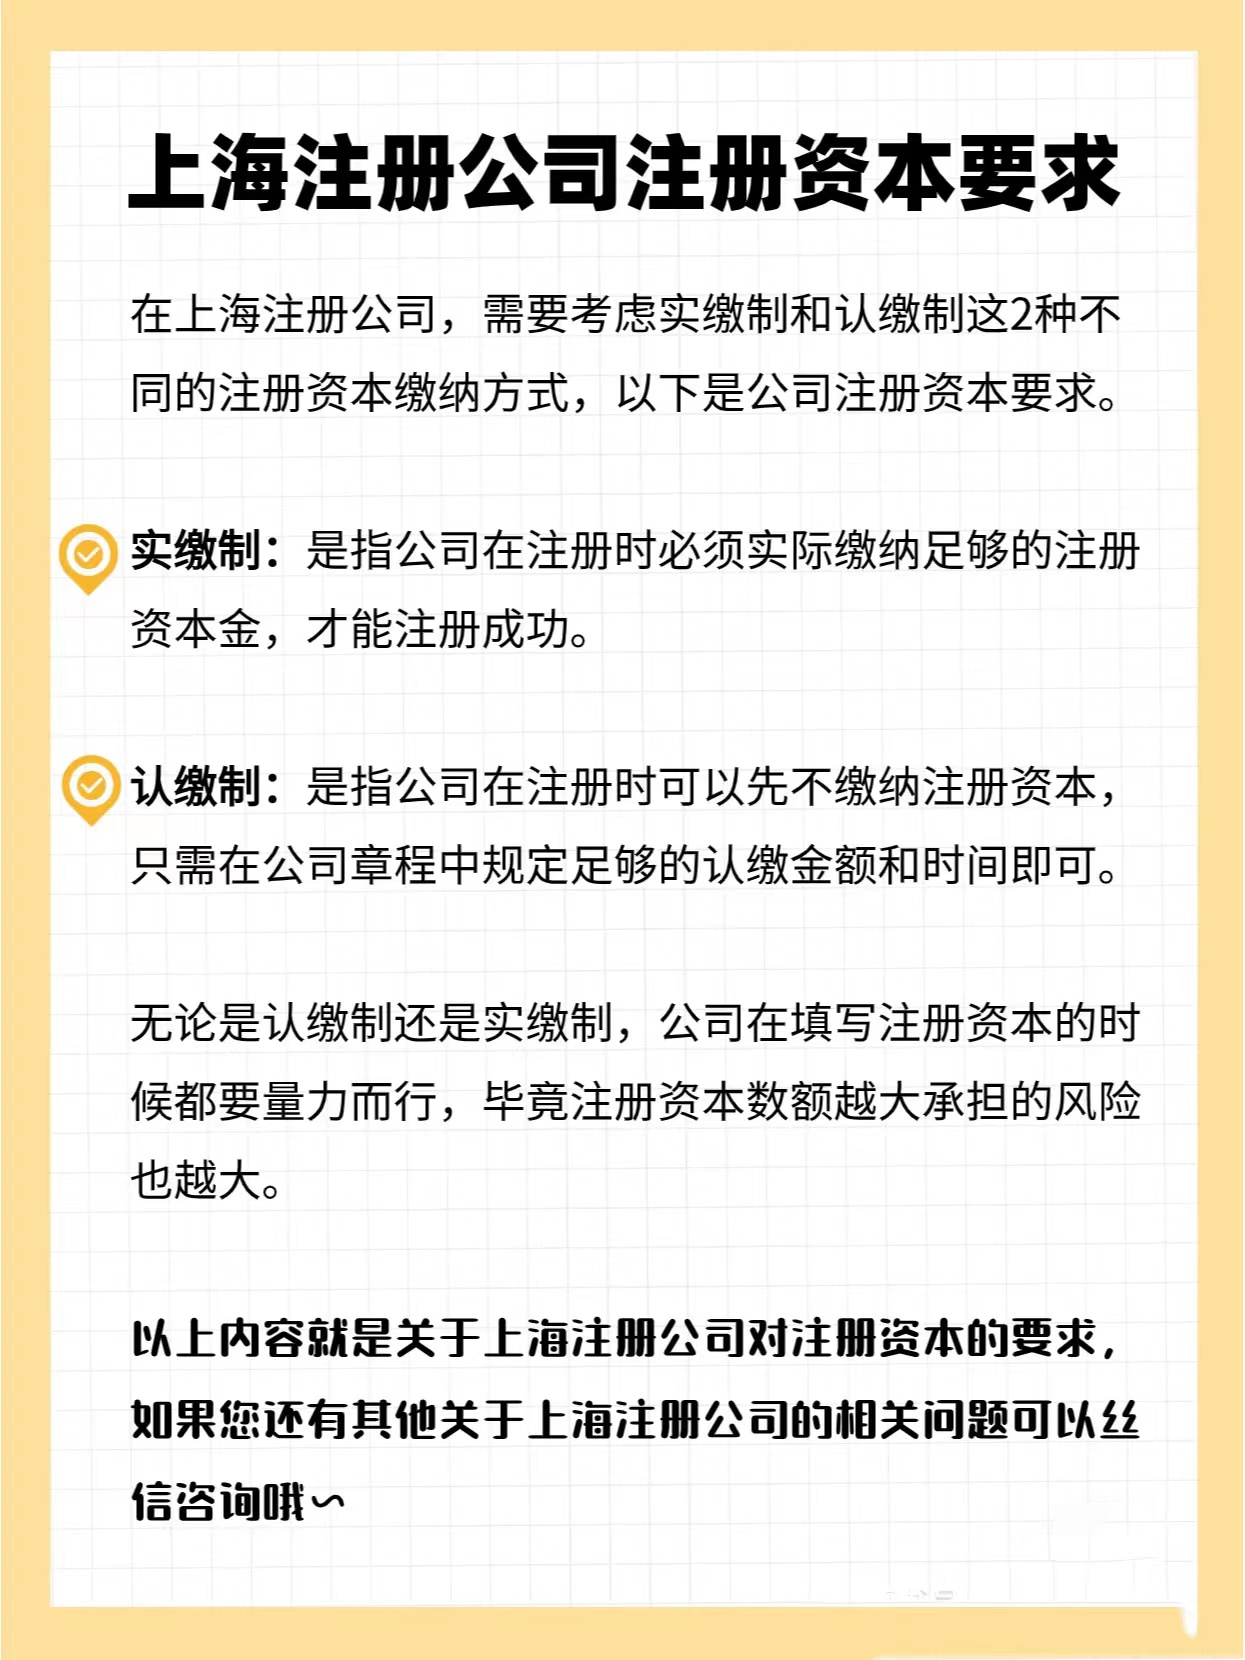 上海注册公司注册资本要求